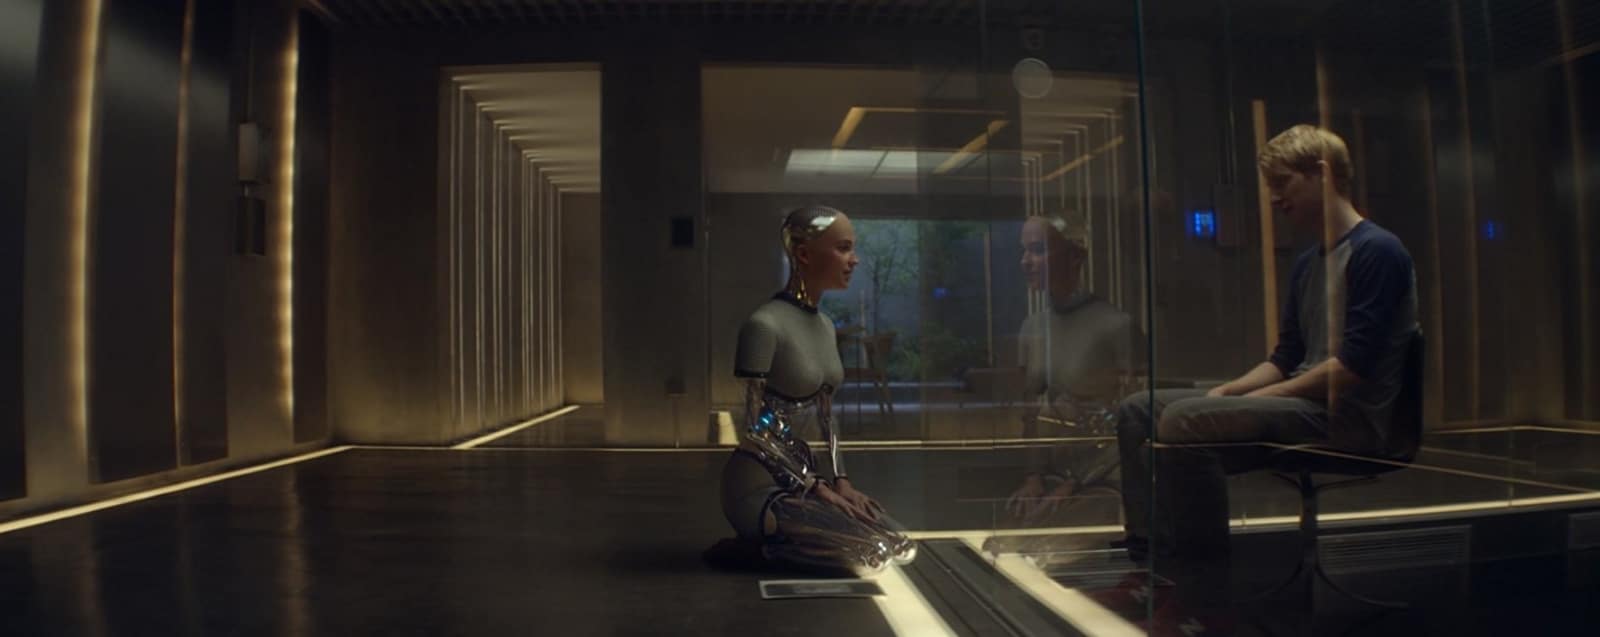 Futurisztikus szerelem. 3 megdöbbentő sci-fi, ember és robot közti kapcsolatról